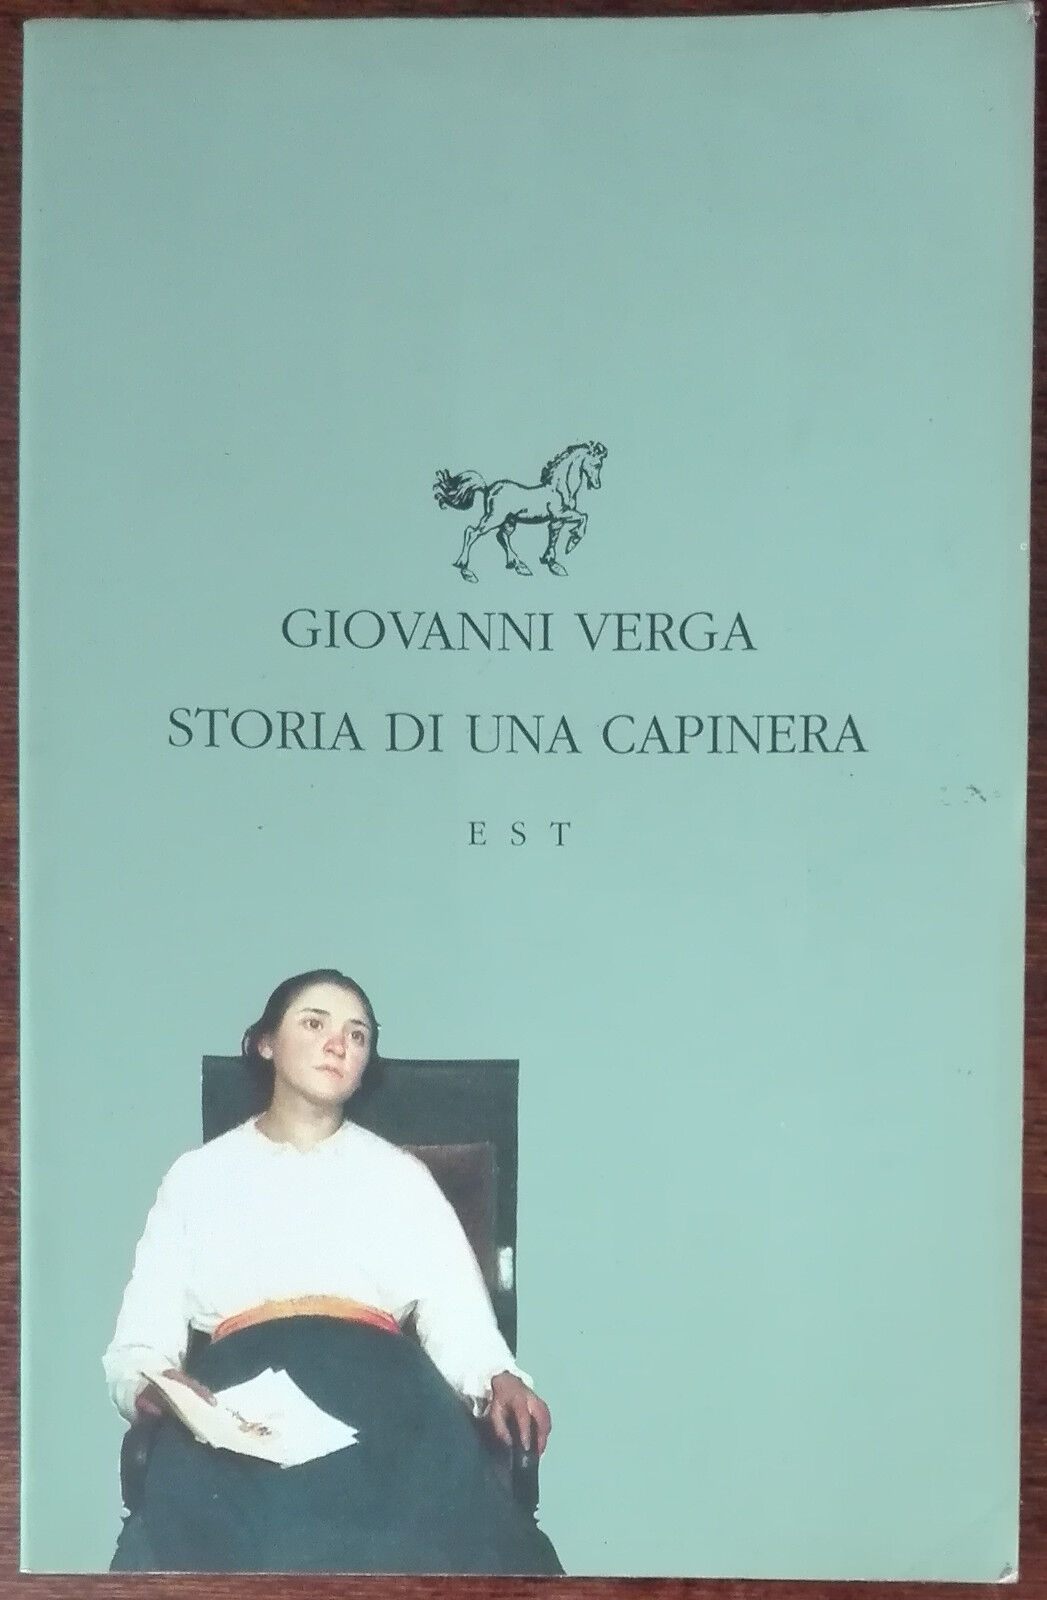 Storia di una capinera - Giovanni Verga - Studio Tesi, 1994 - A